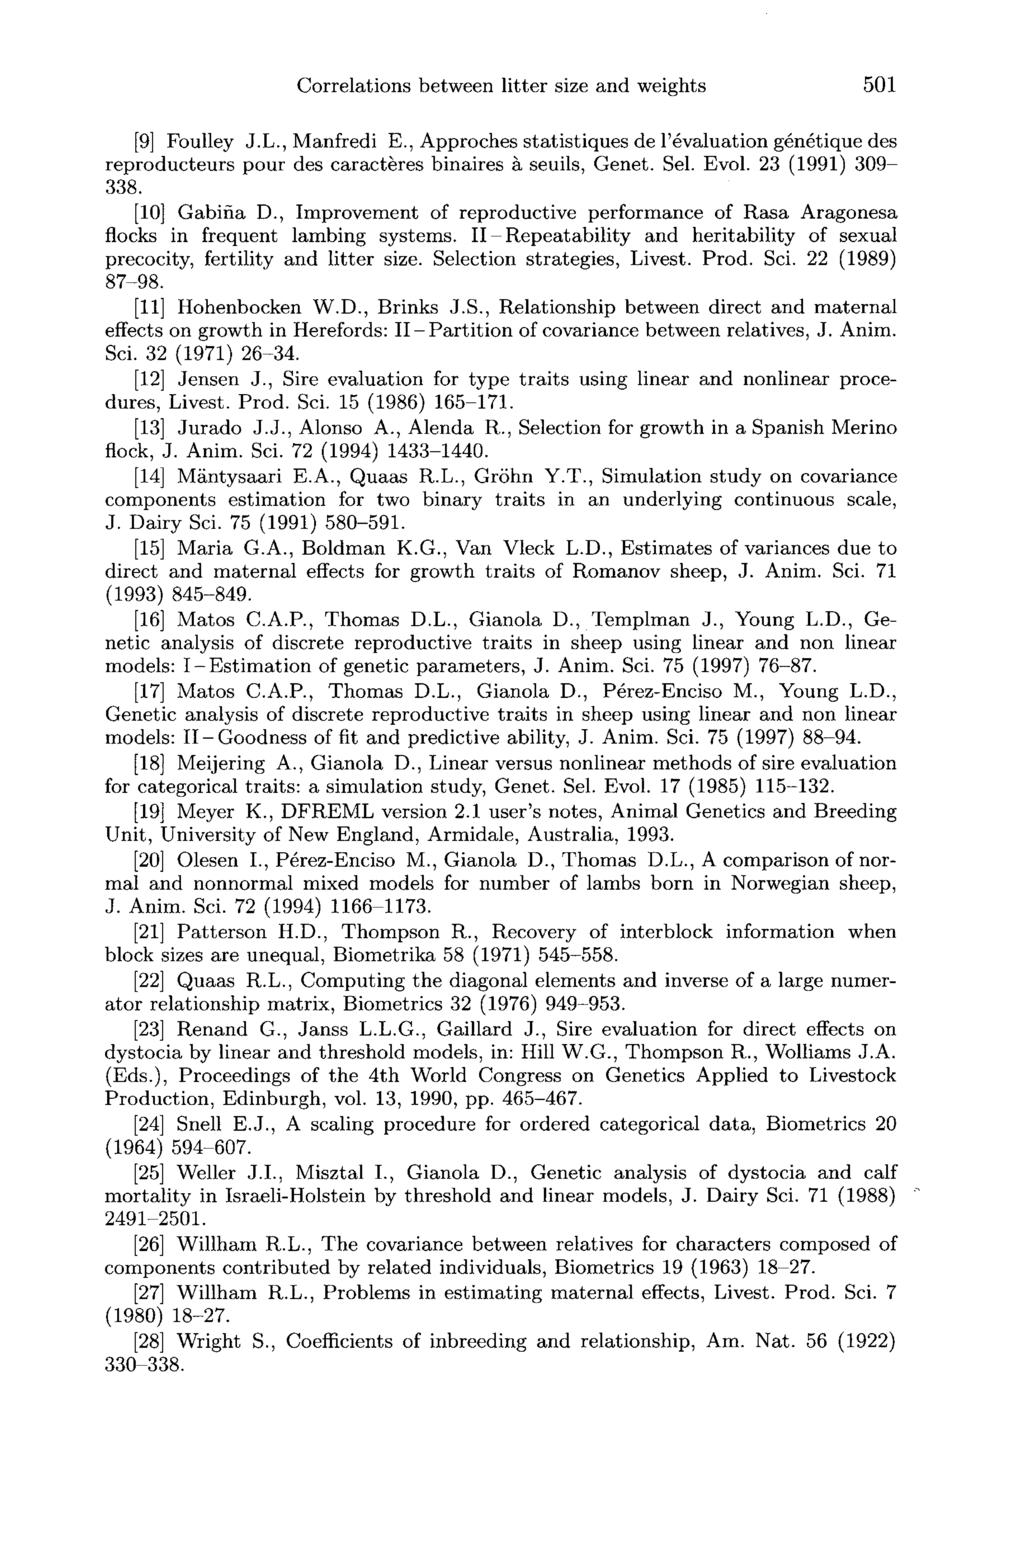 [9] Foulley J.L., Manfredi E., Approches statistiques de 1 6valuation génétique des reproducteurs pour des caract6res binaires à seuils, Genet. Sel. Evol. 23 (1991) 309-338. [10] Gabina D.